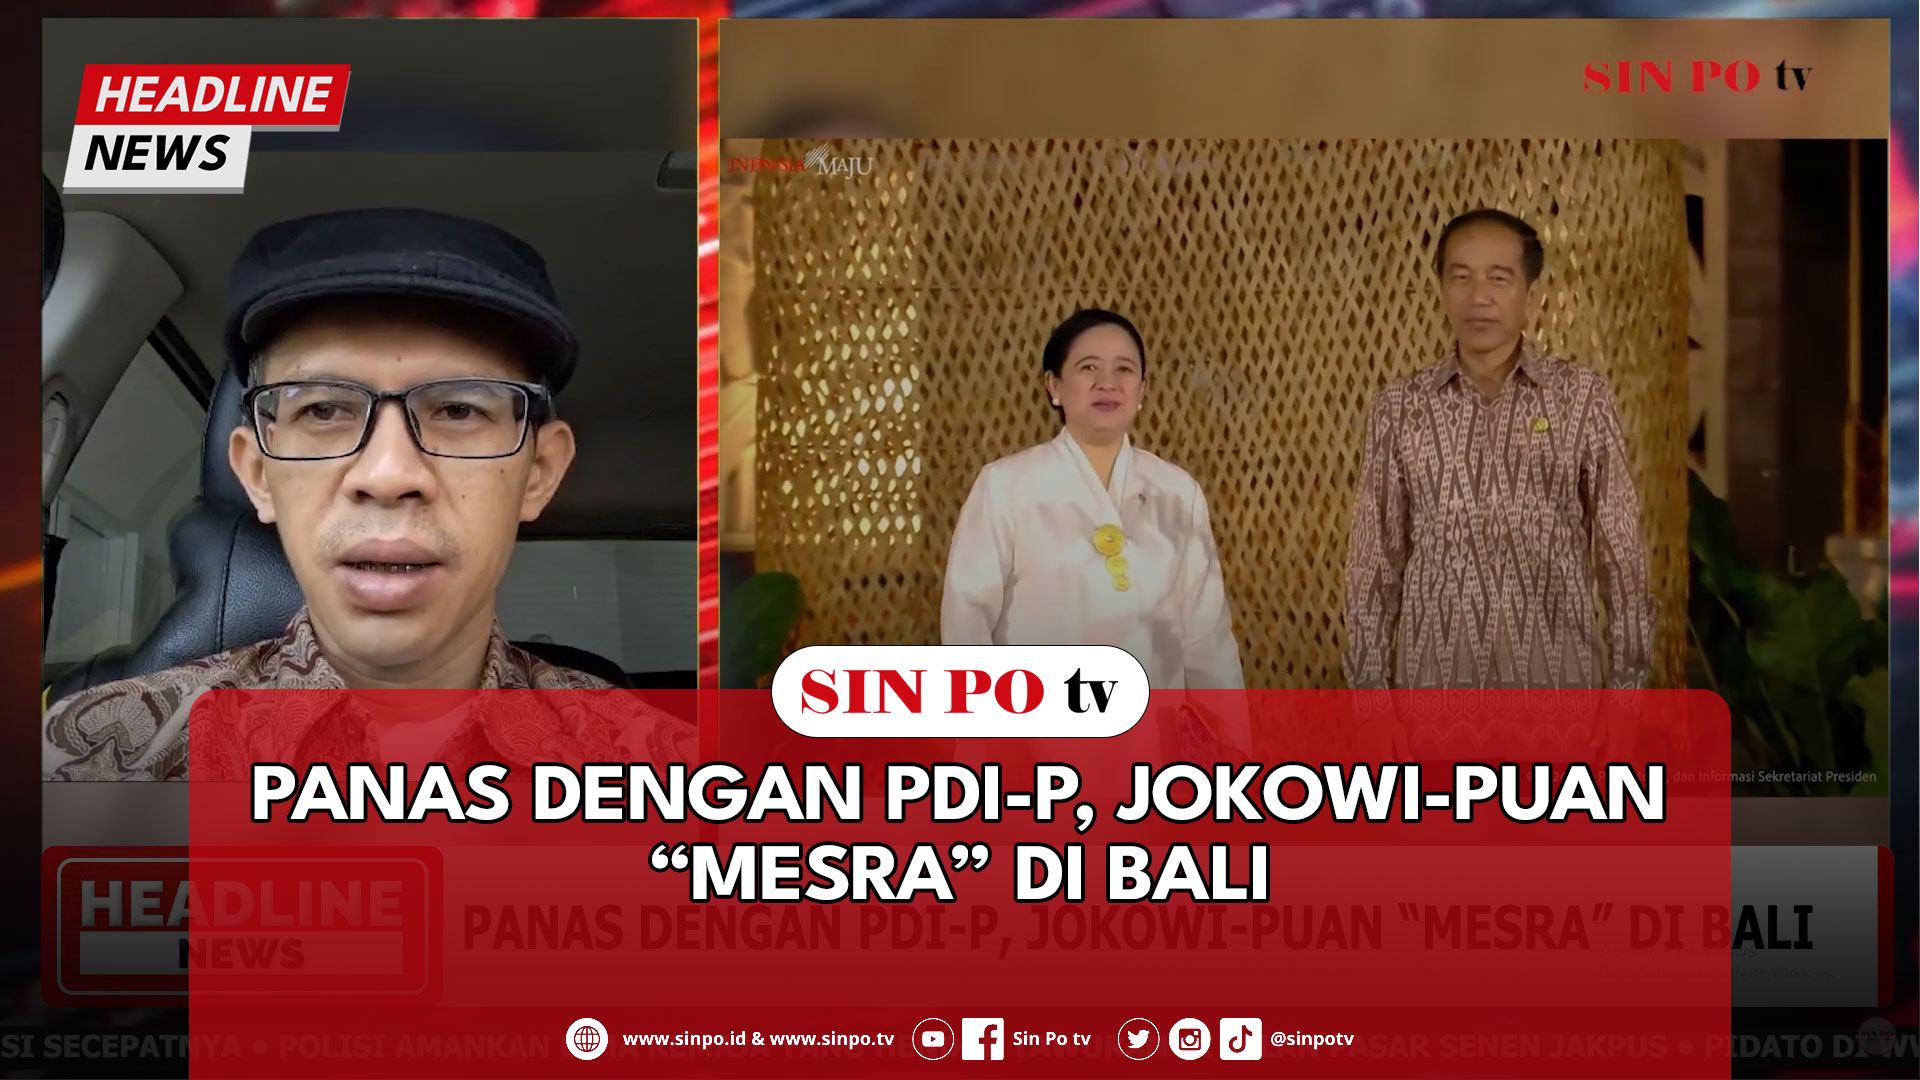 Panas Dengan PDI-P, Jokowi-Puan “Mesra” Di Bali